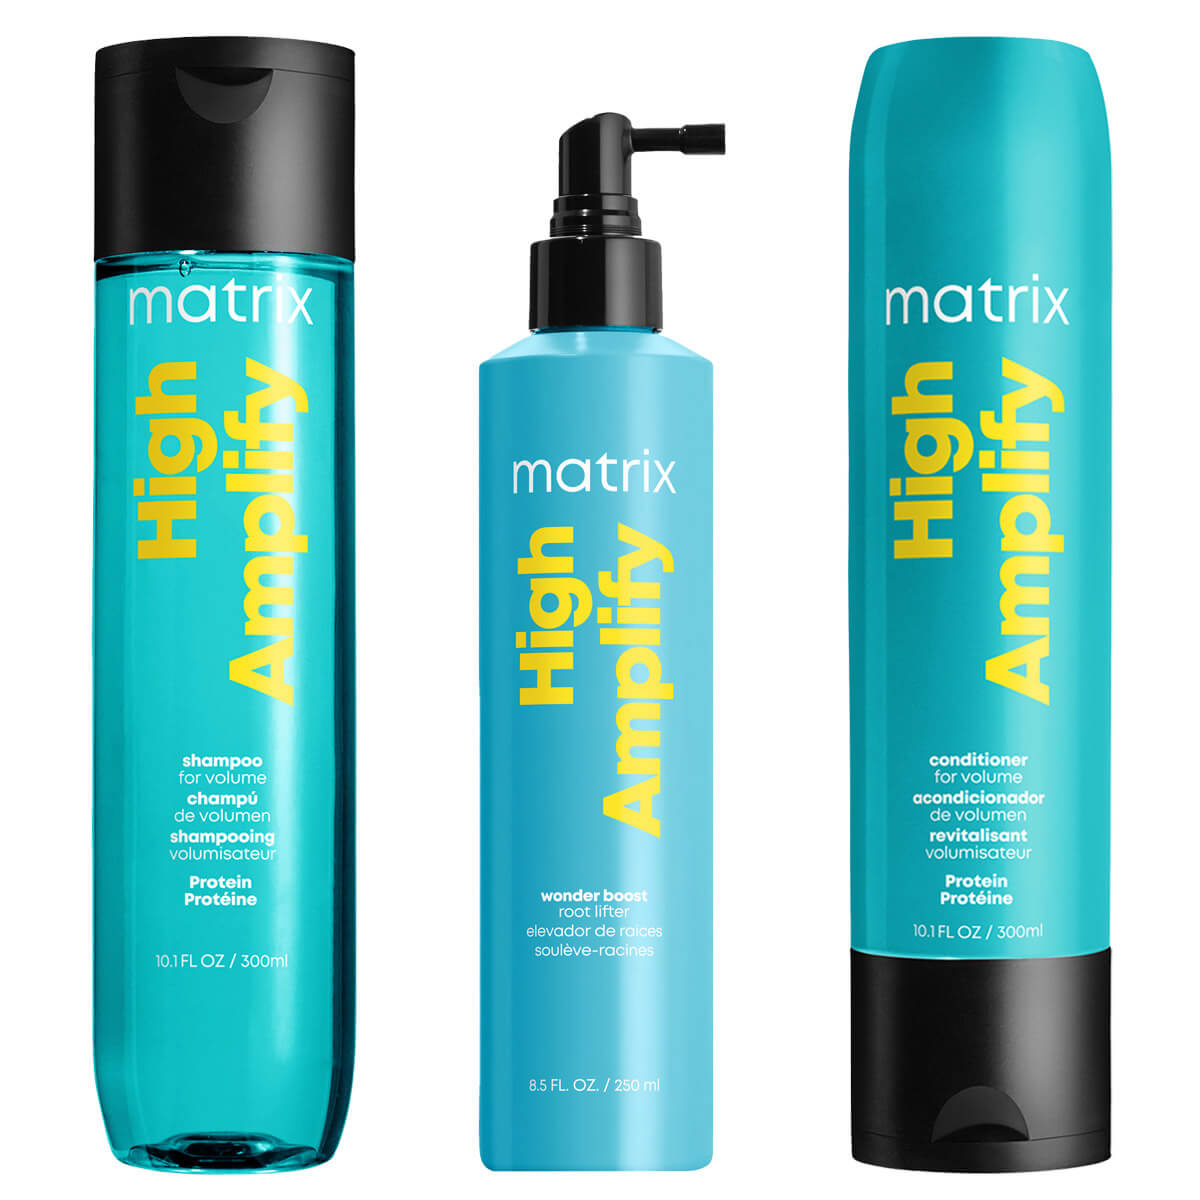 matrix szampon do włosów cienkich